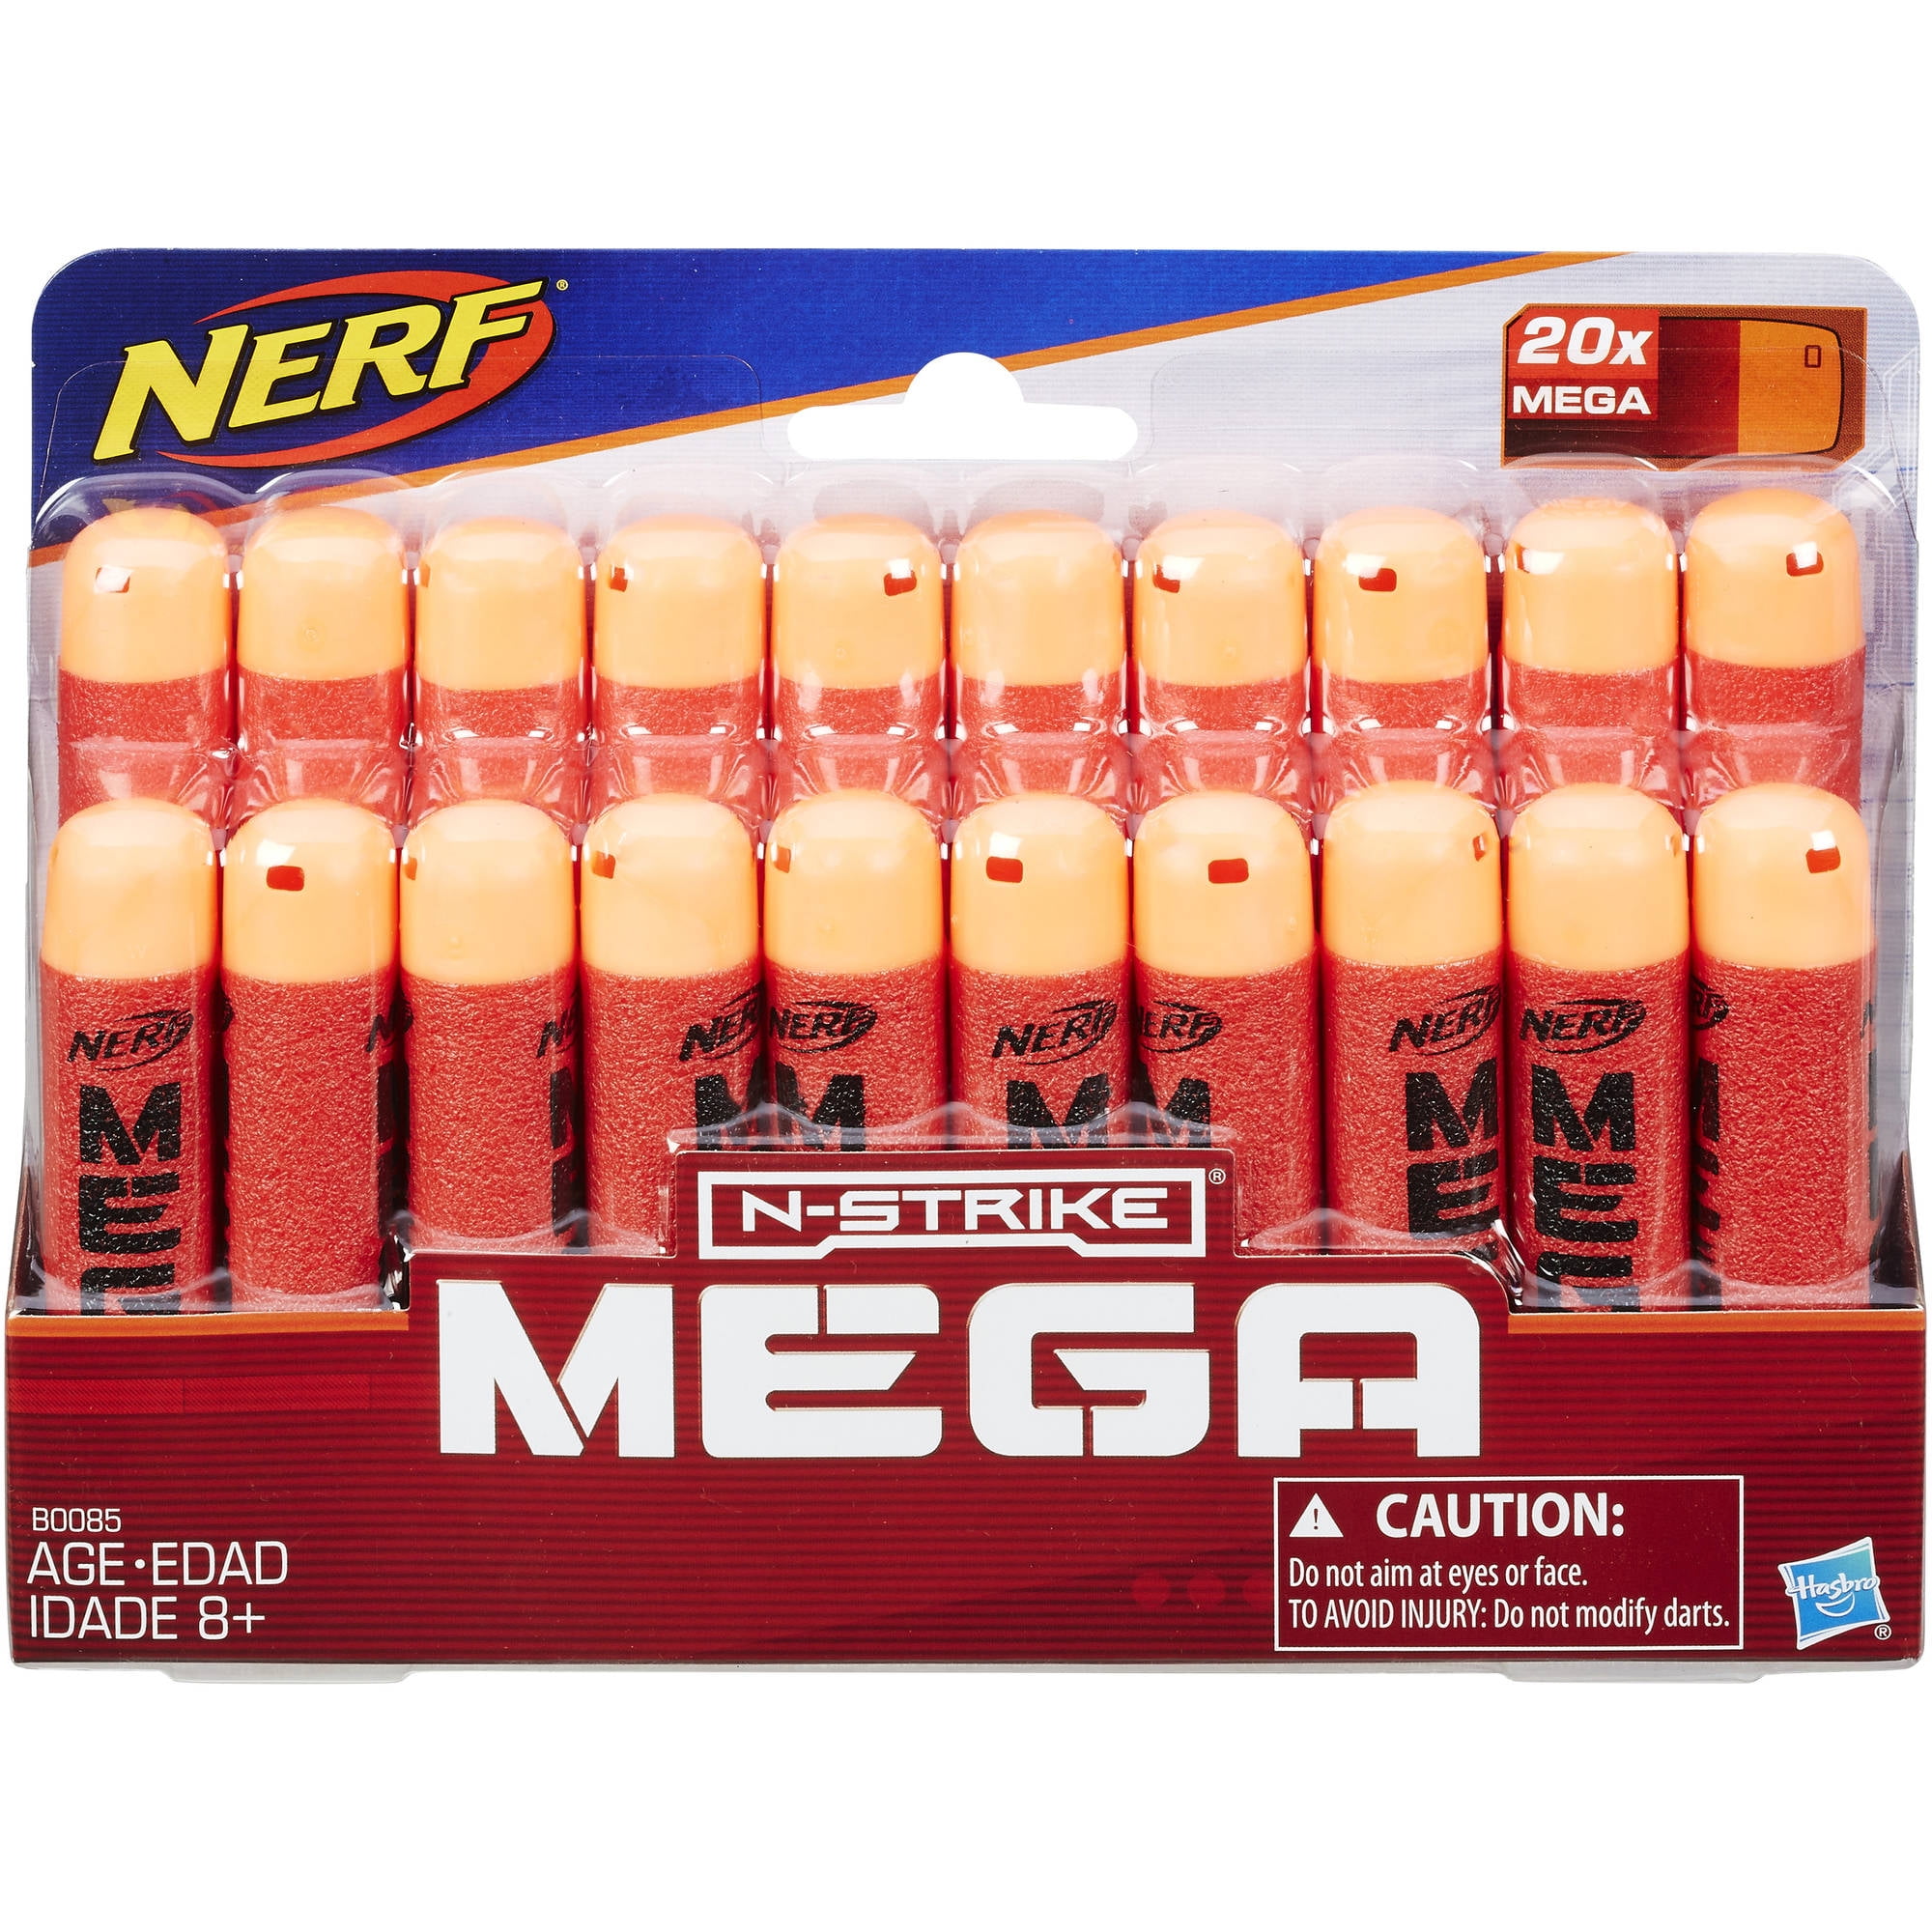 New Nerf N-Strike MEGA Whistler Darts 20 Pack 